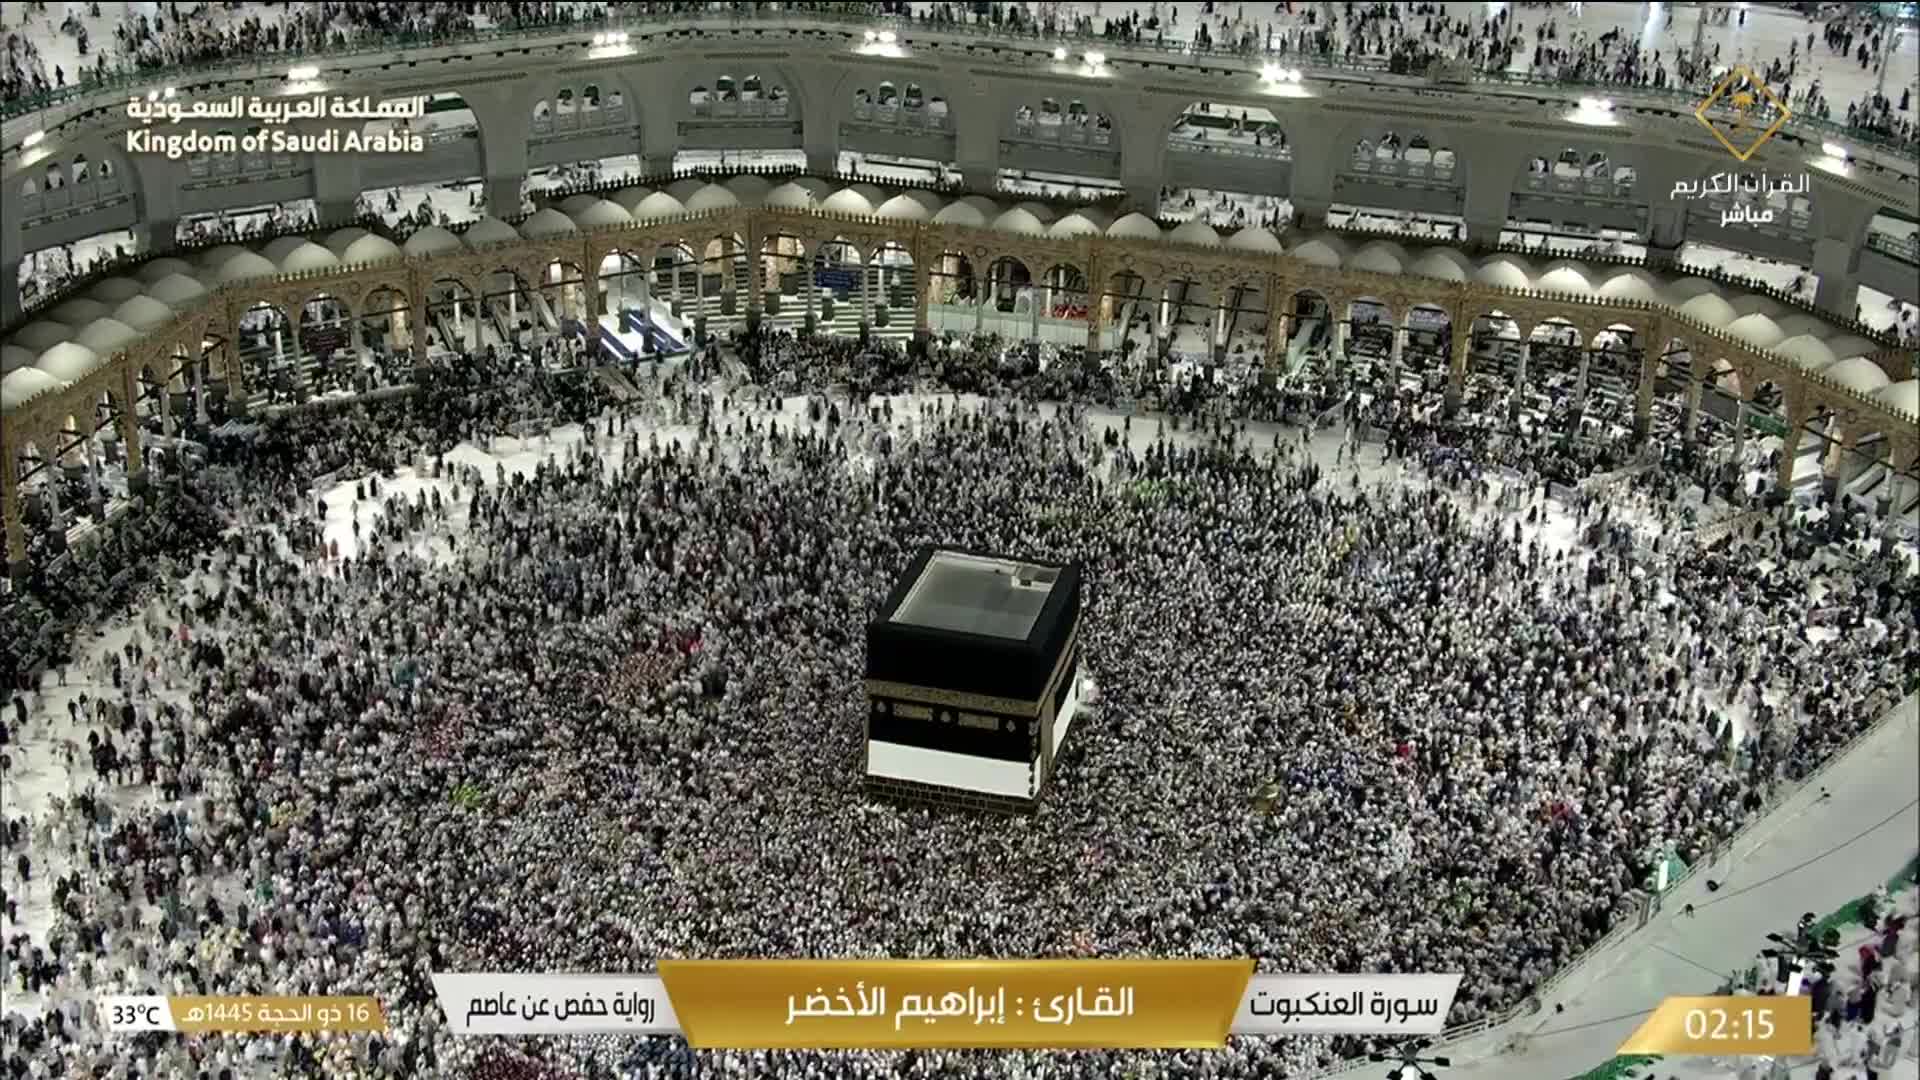 La Mecque Di. 02:36